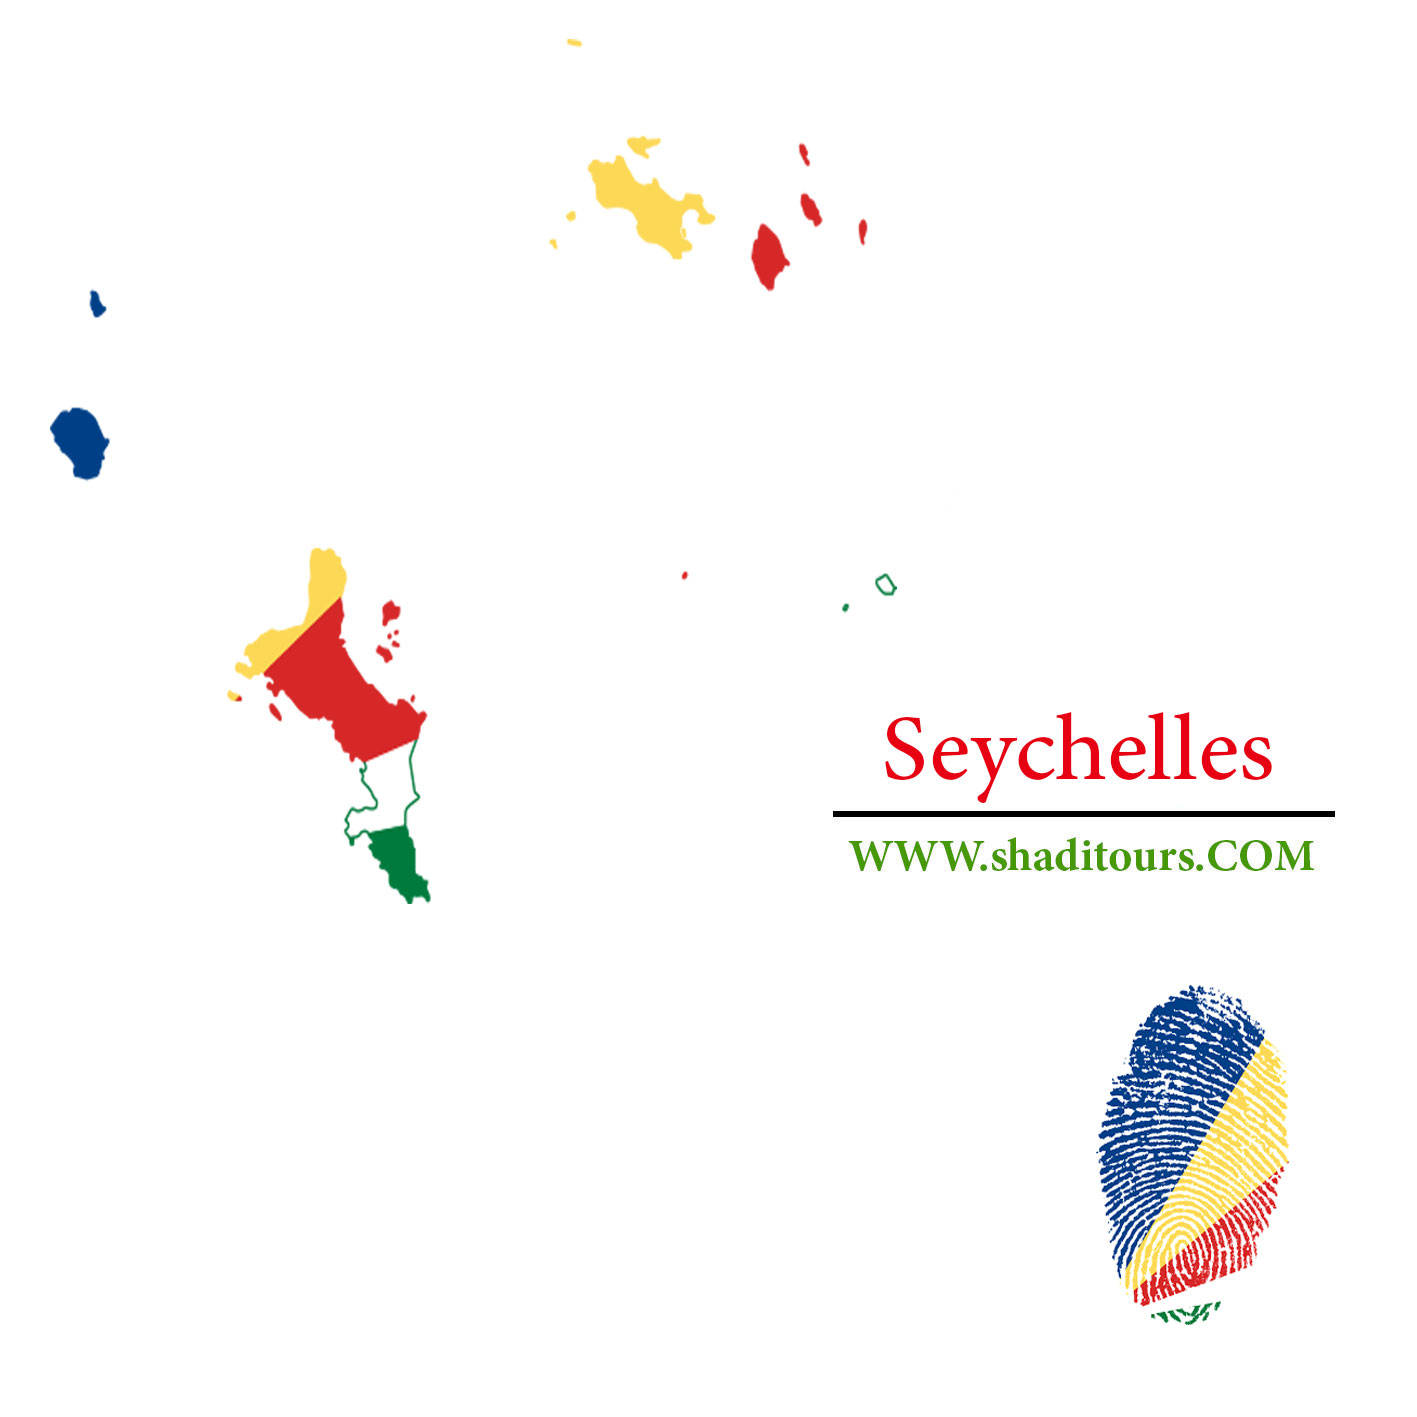 Seychelles-shaditours